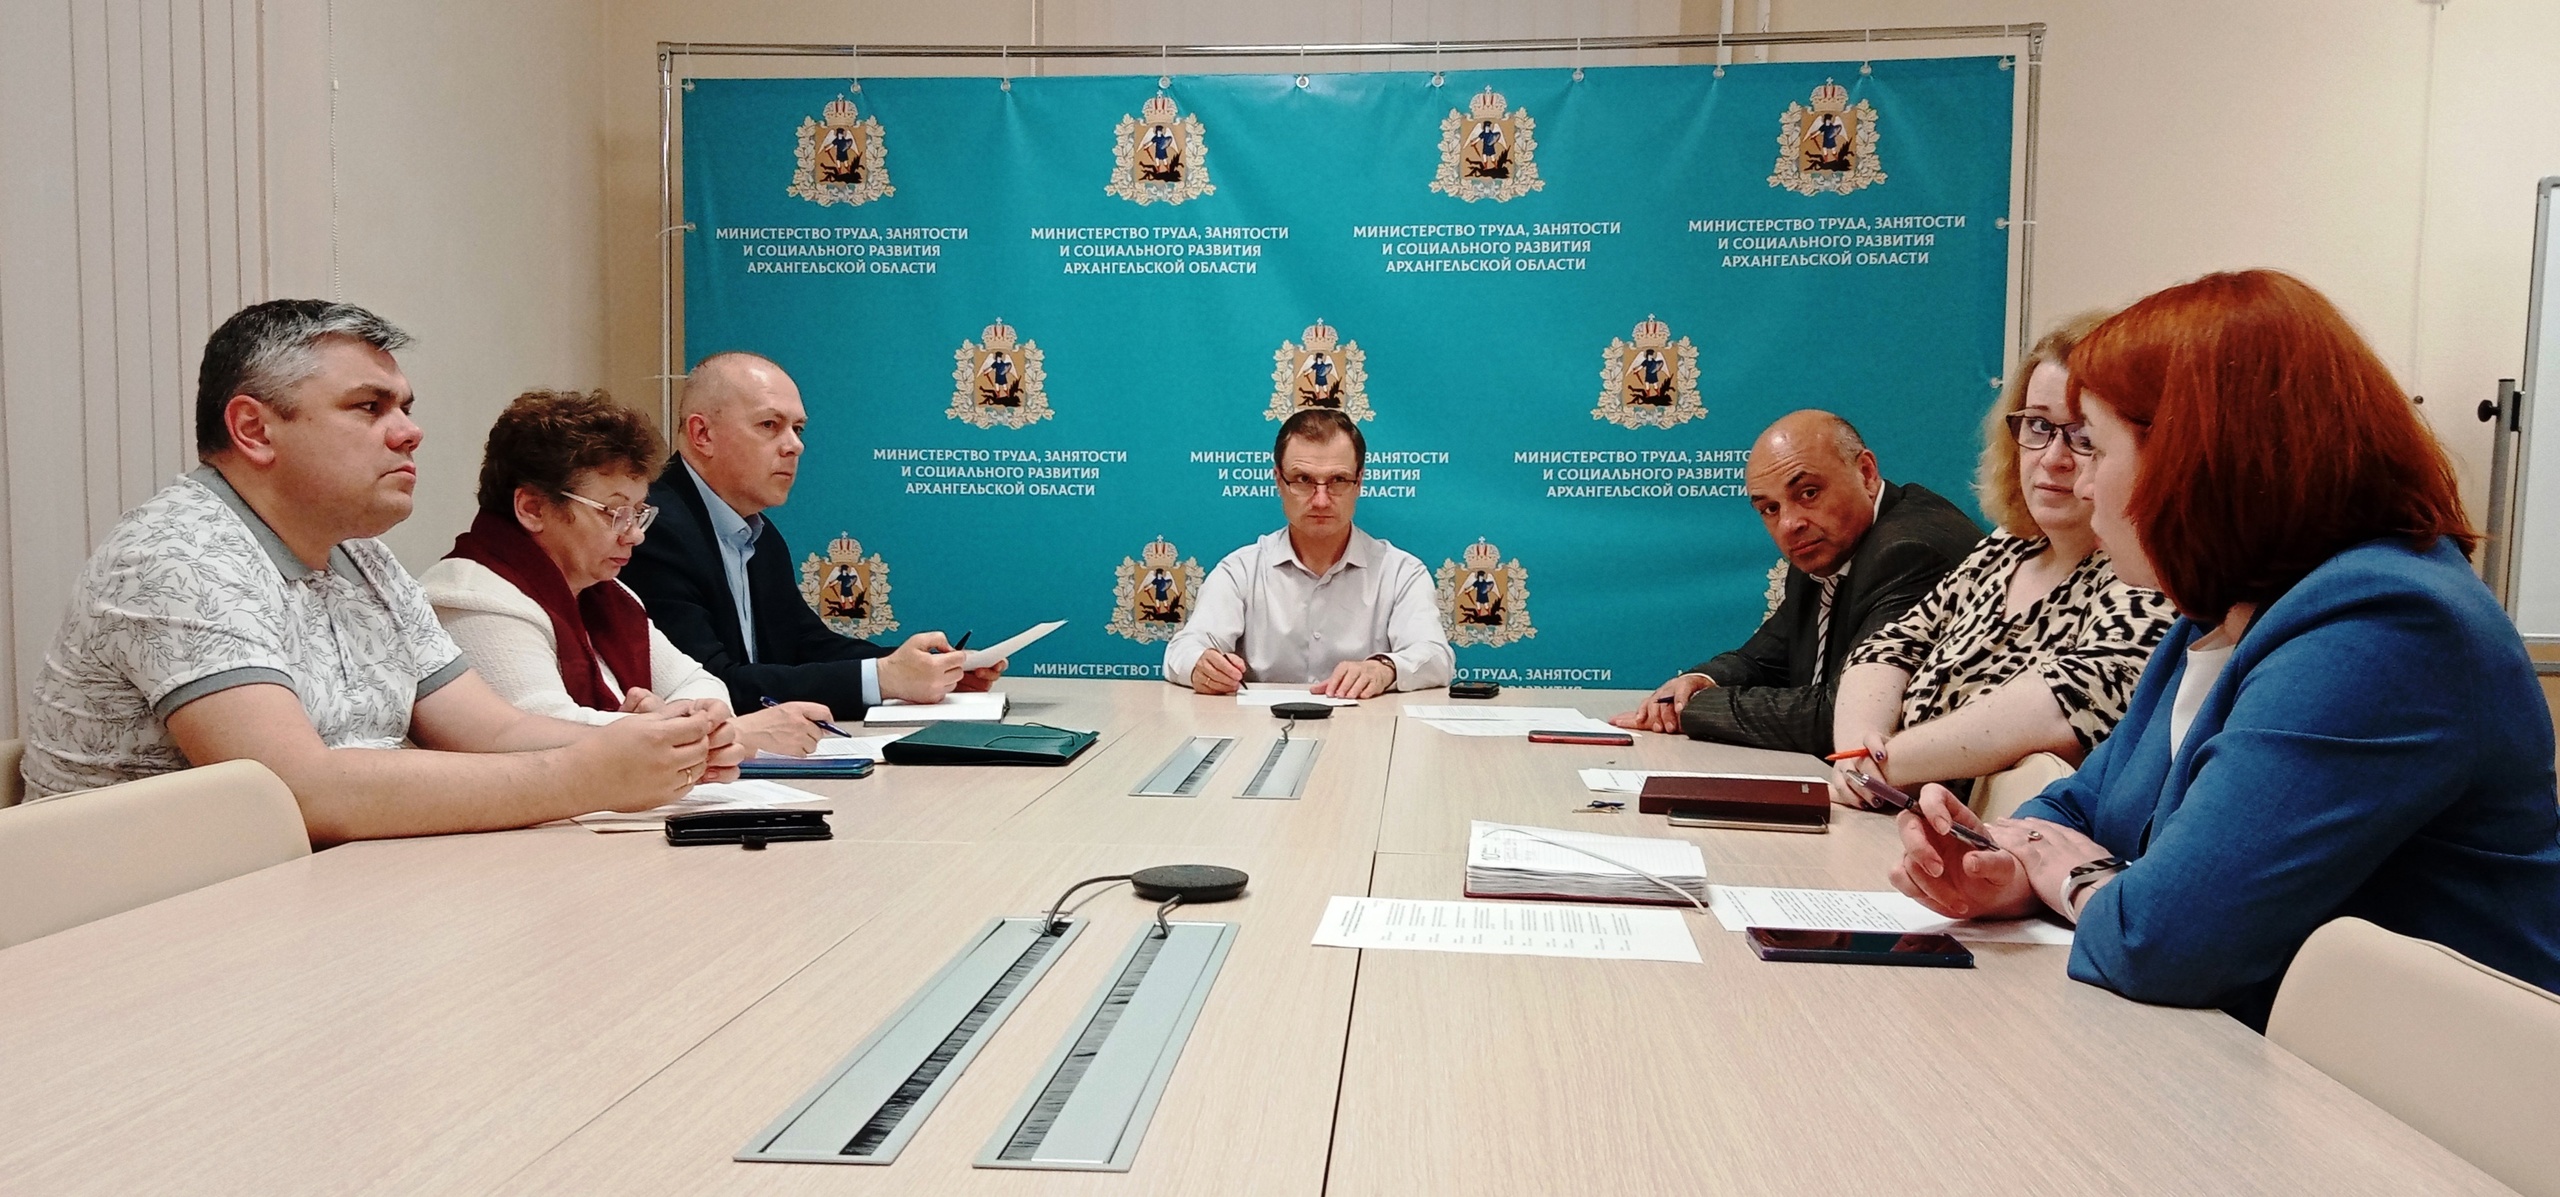 Подготовка к Архангельской областной трехсторонней комиссии началась